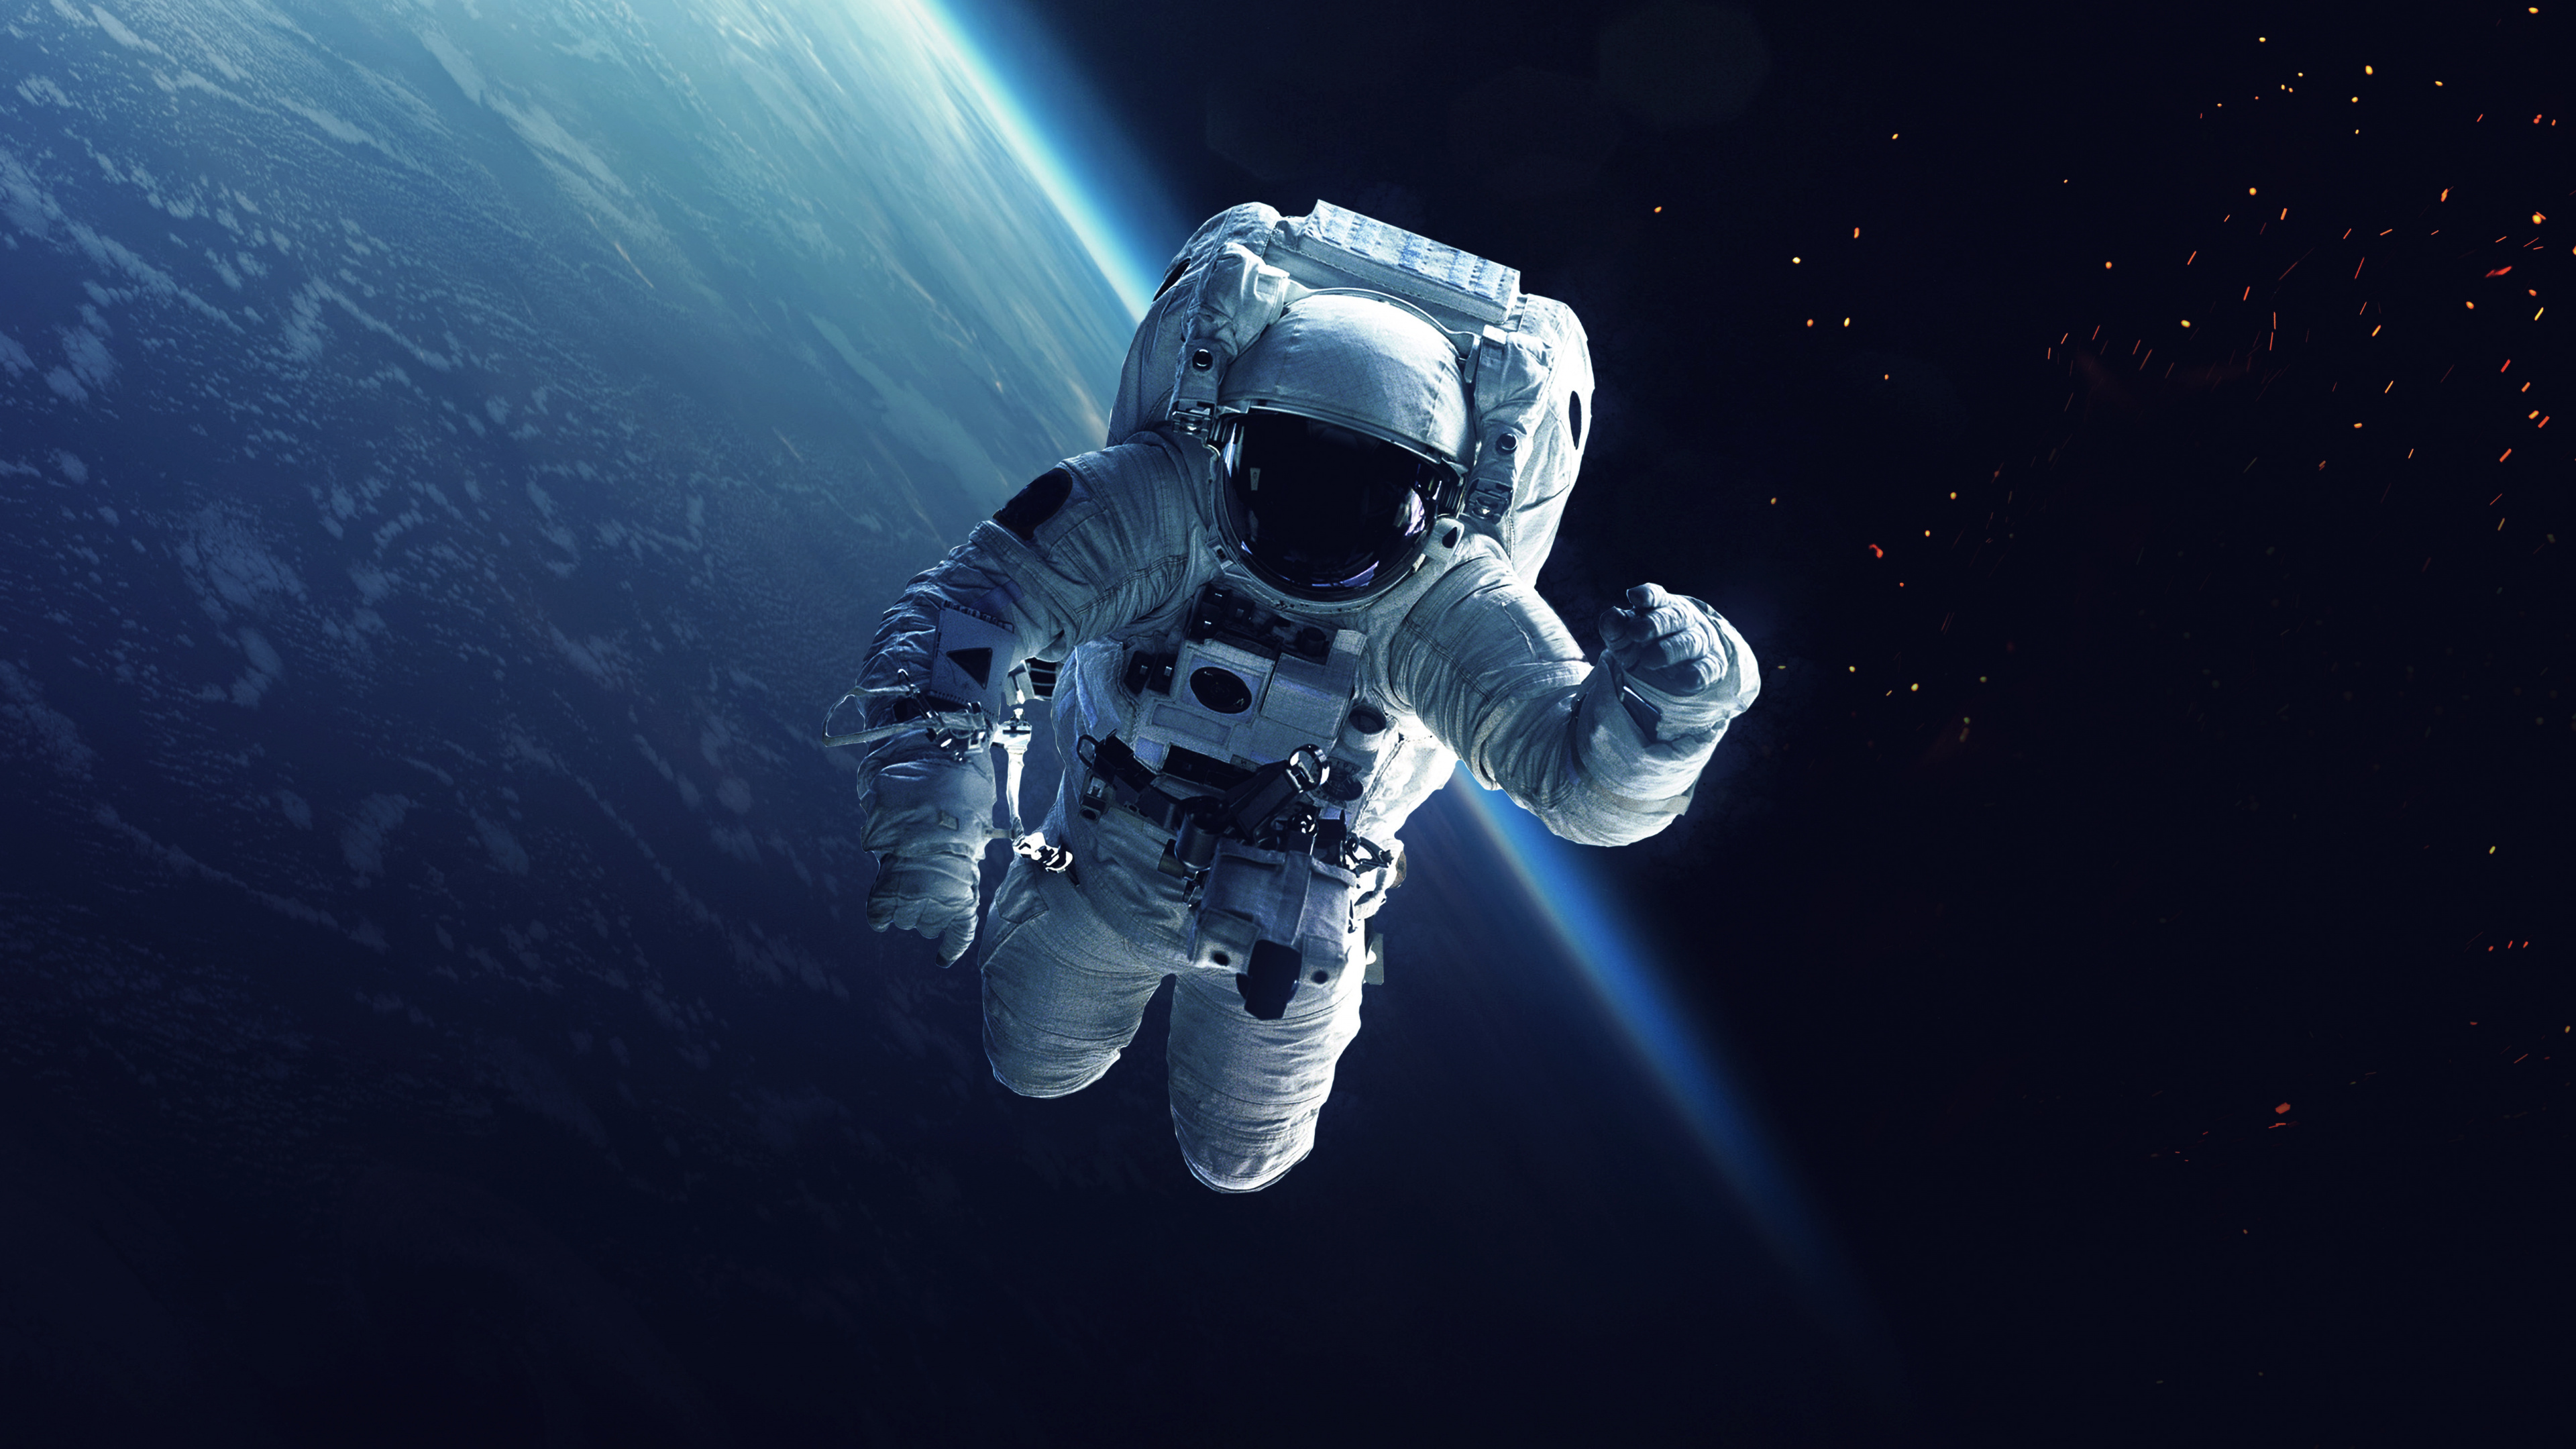 国际空间站, 宇航员, 美国宇航局, 空间探索, 外层空间 壁纸 3840x2160 允许